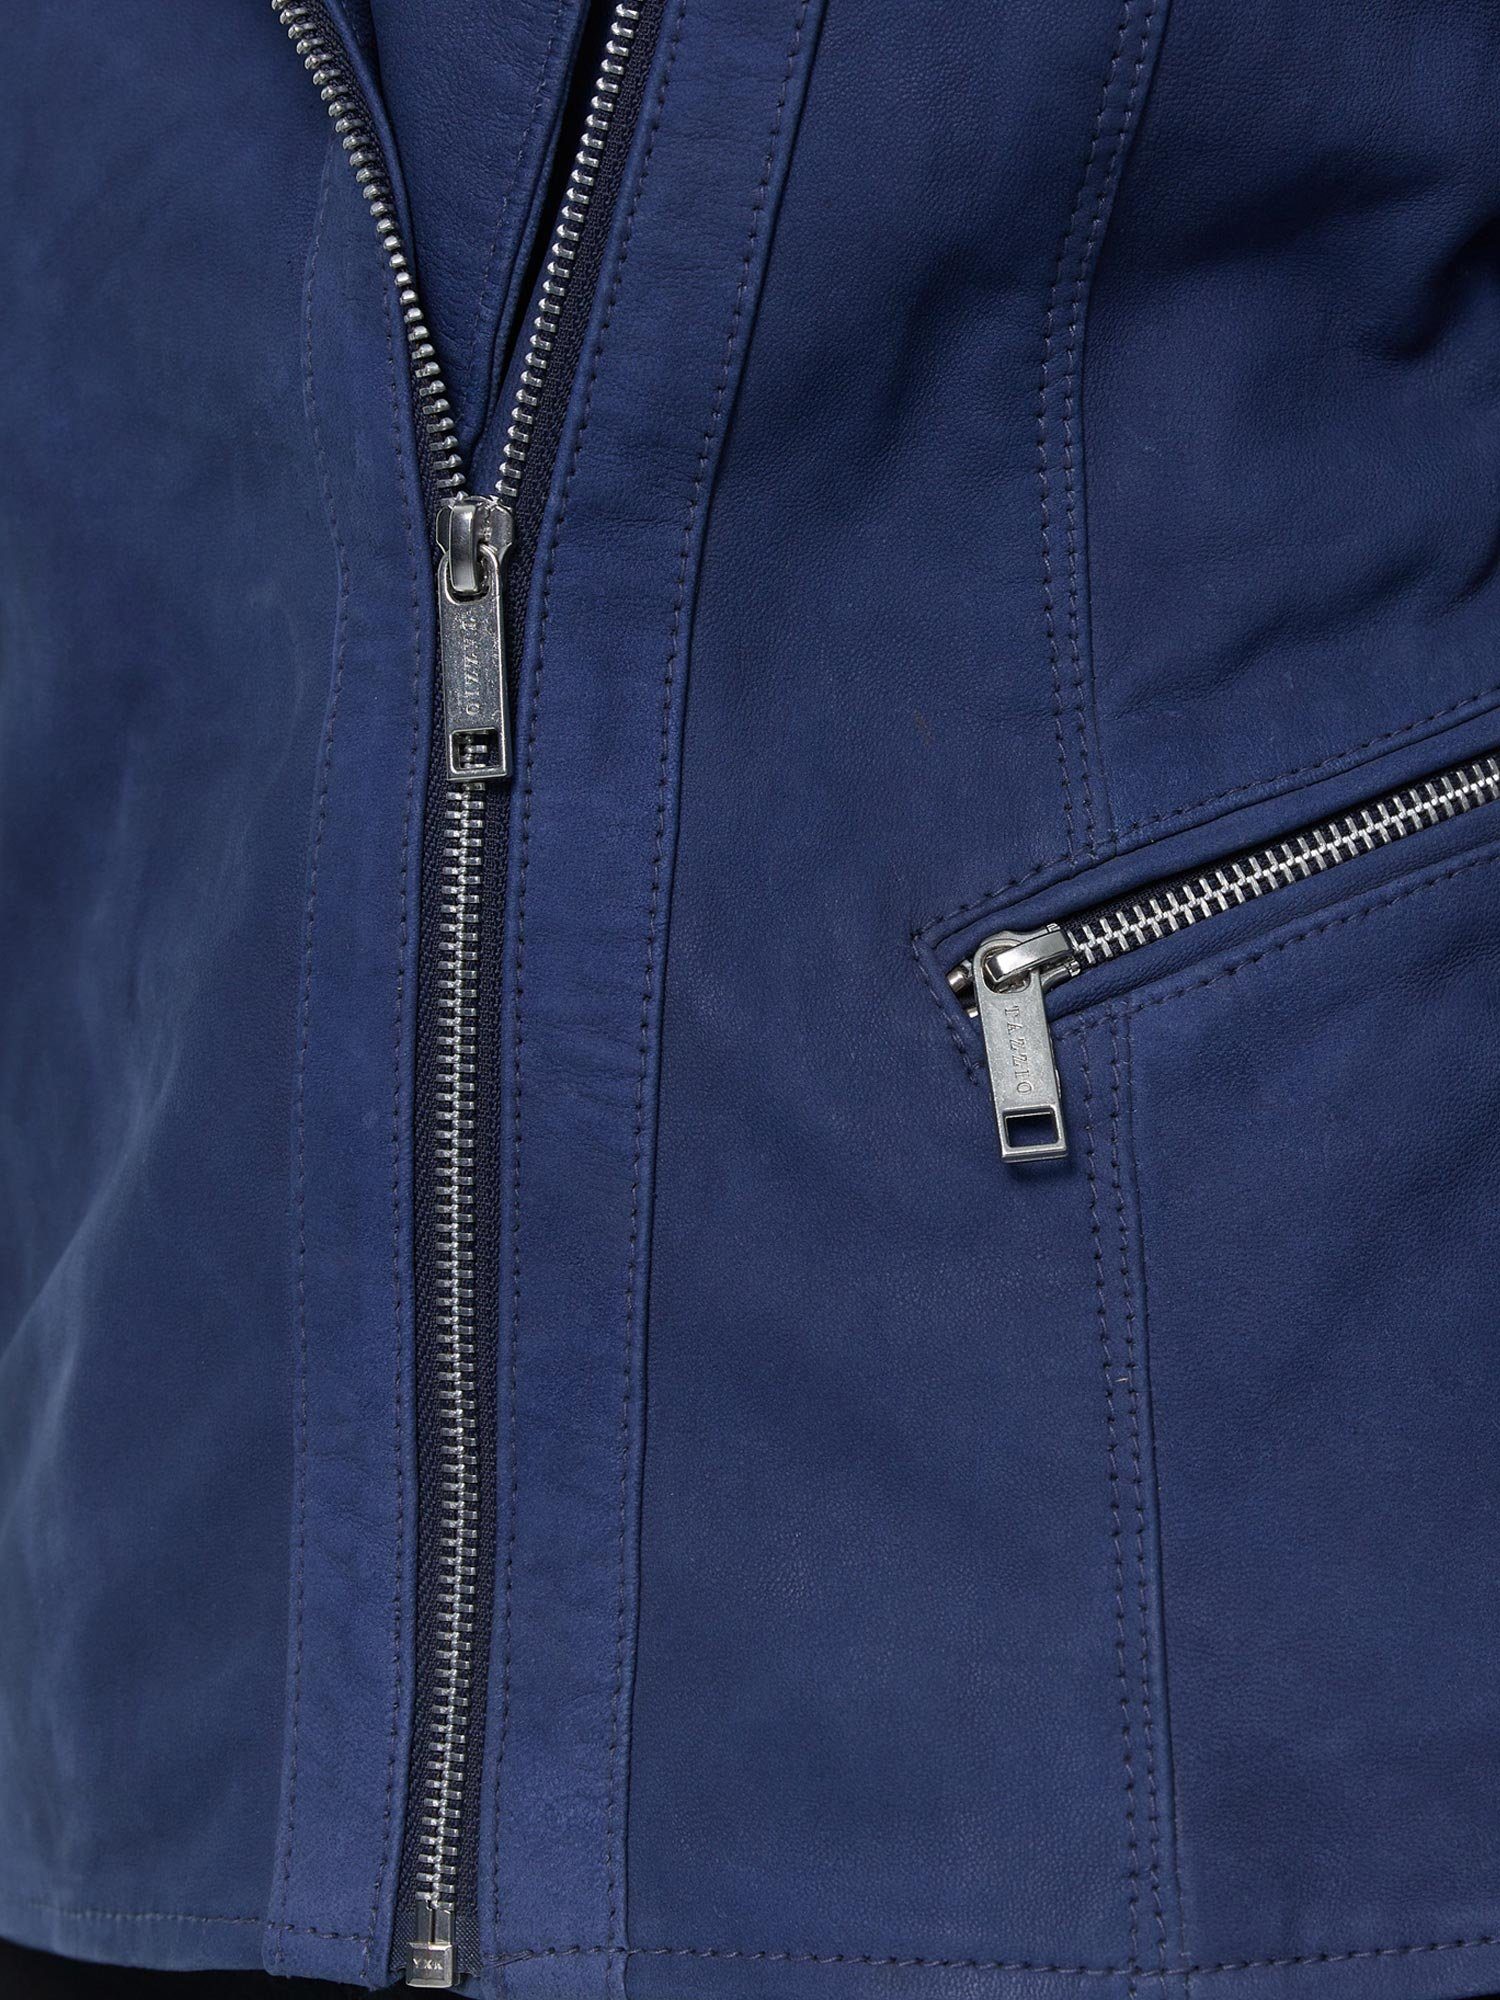 Lederjacke F500 Tazzio Damen mit Leder im Reverskragen & Biker Zipper-Details Jacke blau Look